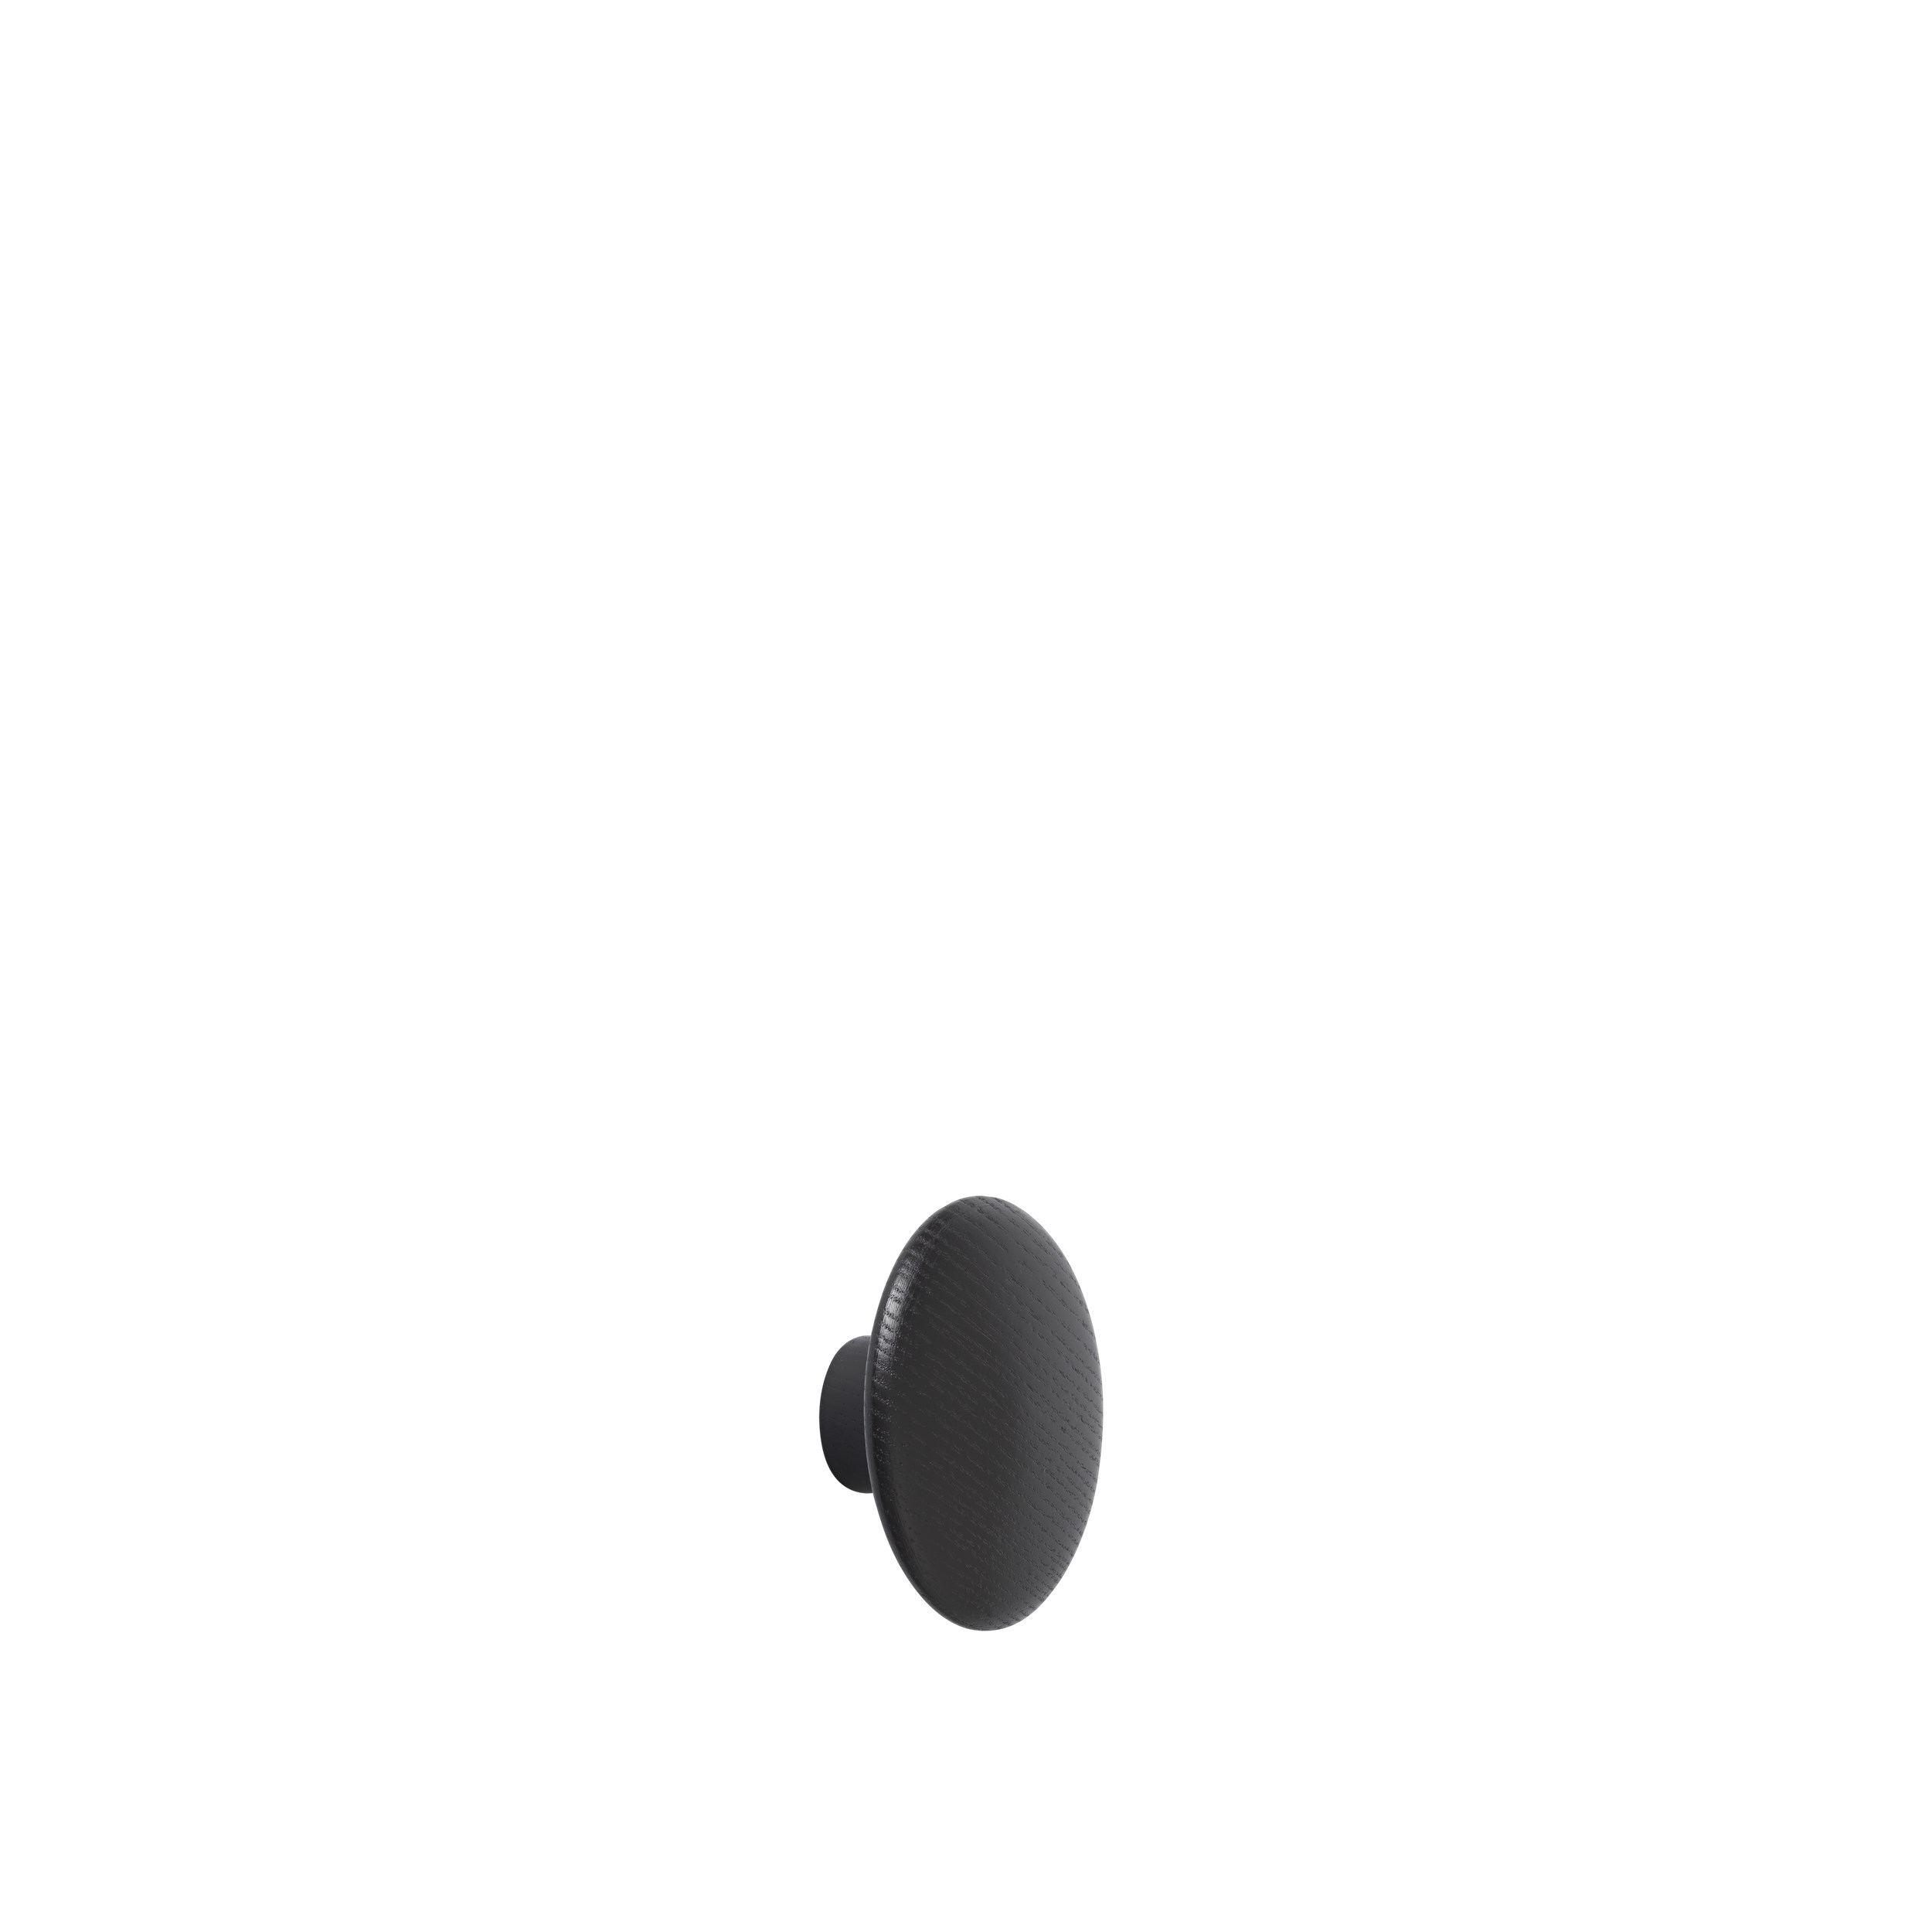 Dot wood X-small Ø 6,5 cm black